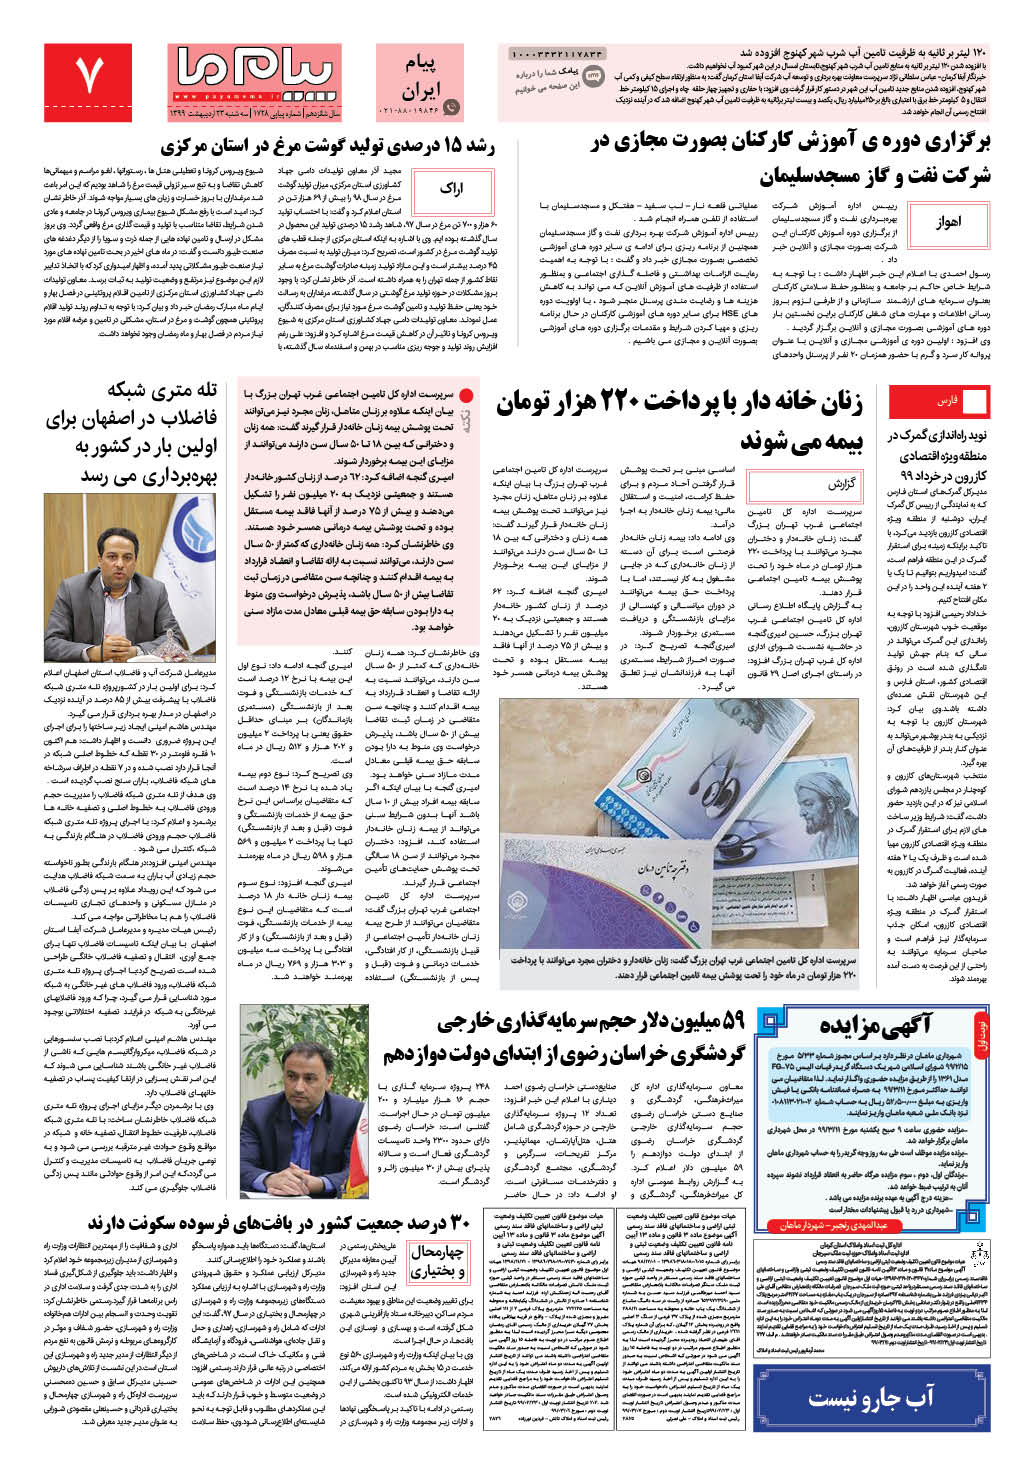 صفحه پیام ایران شماره 1728 روزنامه پیام ما